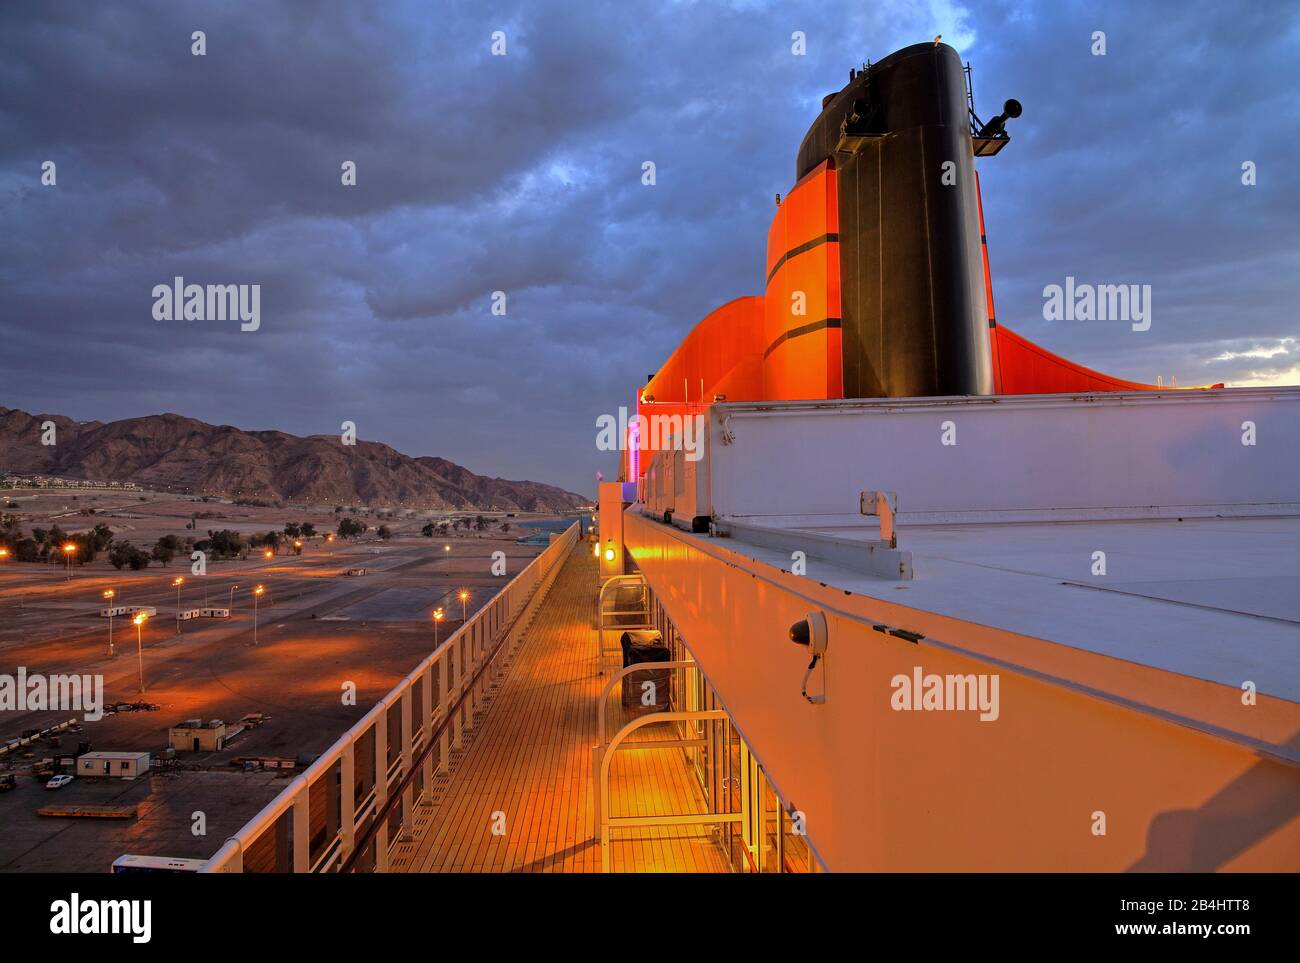 Oberdeck mit Schornstein des Kreuzfahrtschiffs Queen Mary 2 im Hafen in der Dämmerung, Akaba Akaba, Golf von Akaba, Rotes Meer, Jordanien Stockfoto